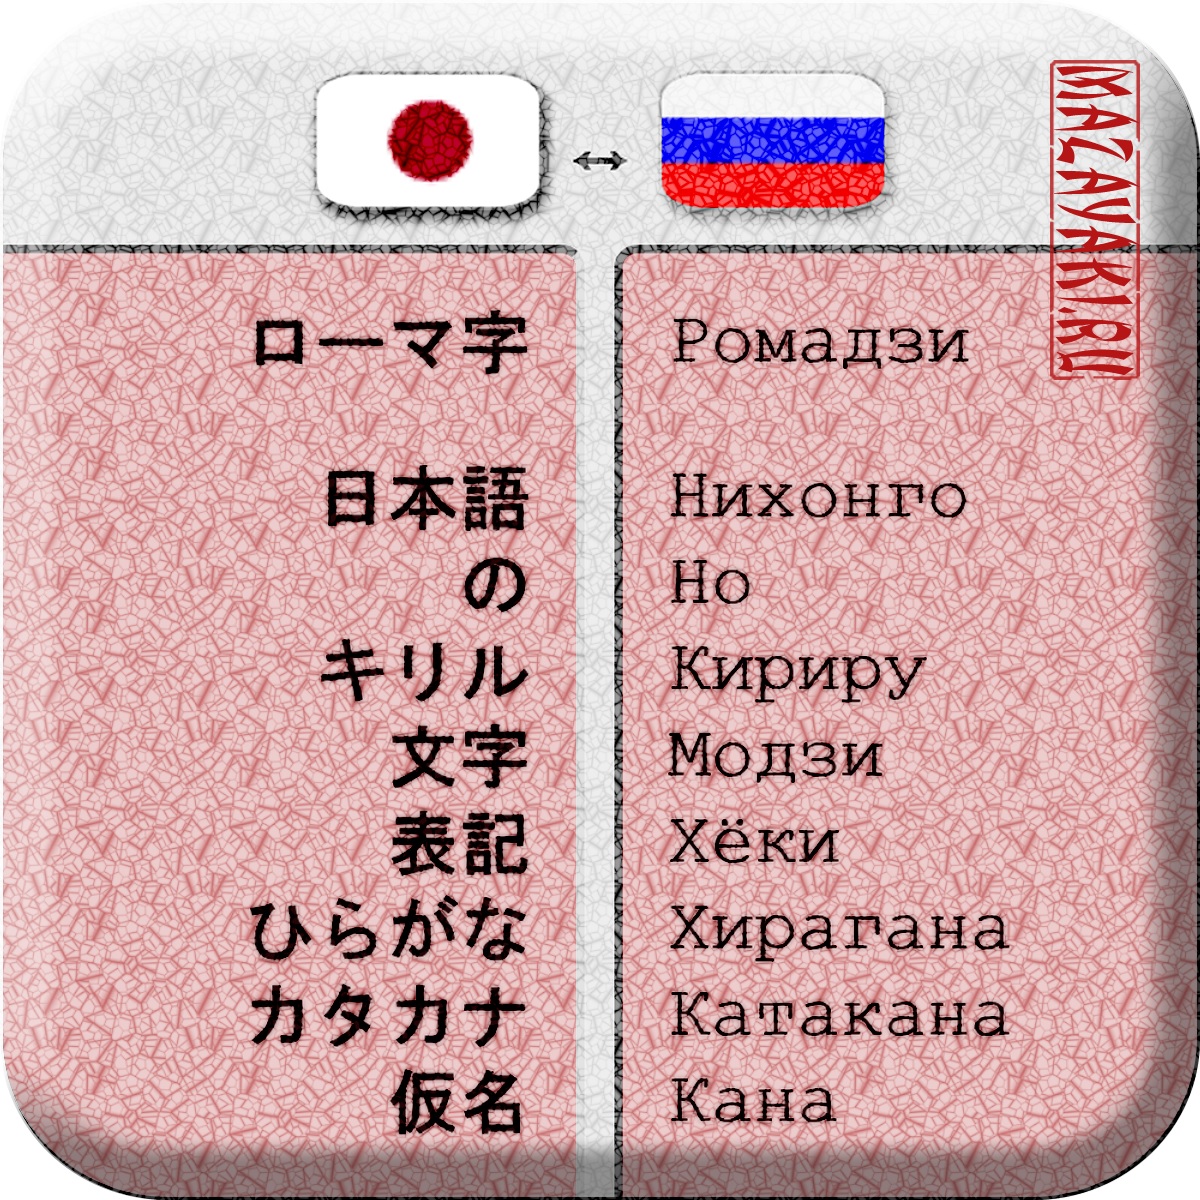 Японский язык